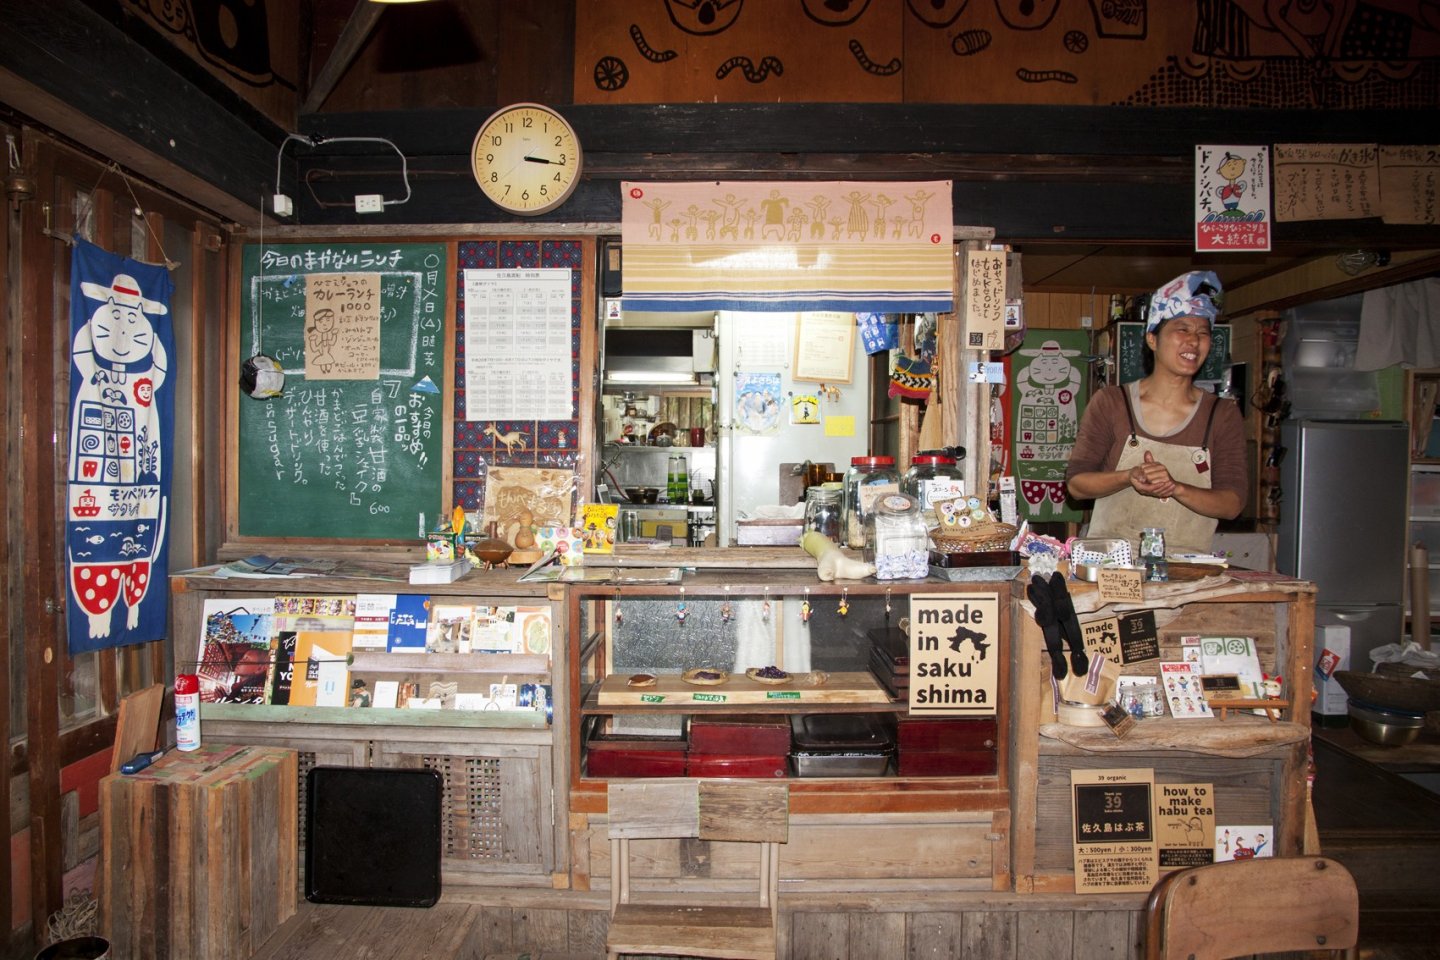 คุณชิบะ (Shiba) เจ้าของร้าน โอยะโอยะ คาเฟ่ มอนเปมารุเกะ (Oyaoya Café Monpemaruke) ที่คอยทั้งต้อนรับลูกค้าและทำอาหารเครื่องดื่มเองรวมถึงเสิร์ฟเองคนเดียวในร้าน 